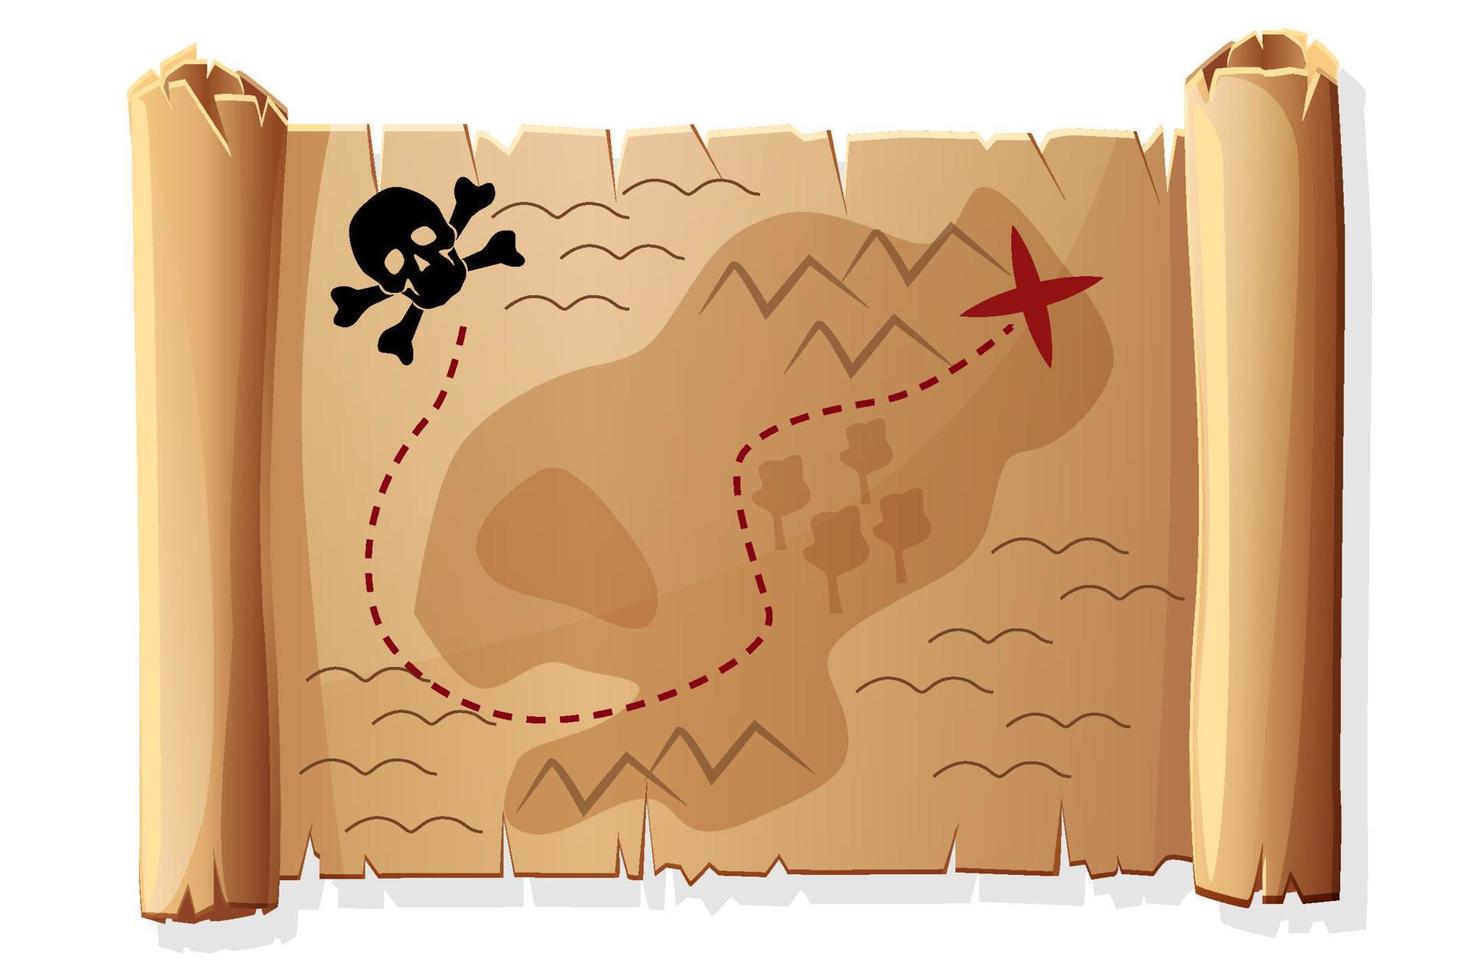 pergamena vecchia mappa, mappa del tesoro antica dei pirati per il gioco. illustrazione vettoriale di carta vintage, icone del cranio per la progettazione grafica.